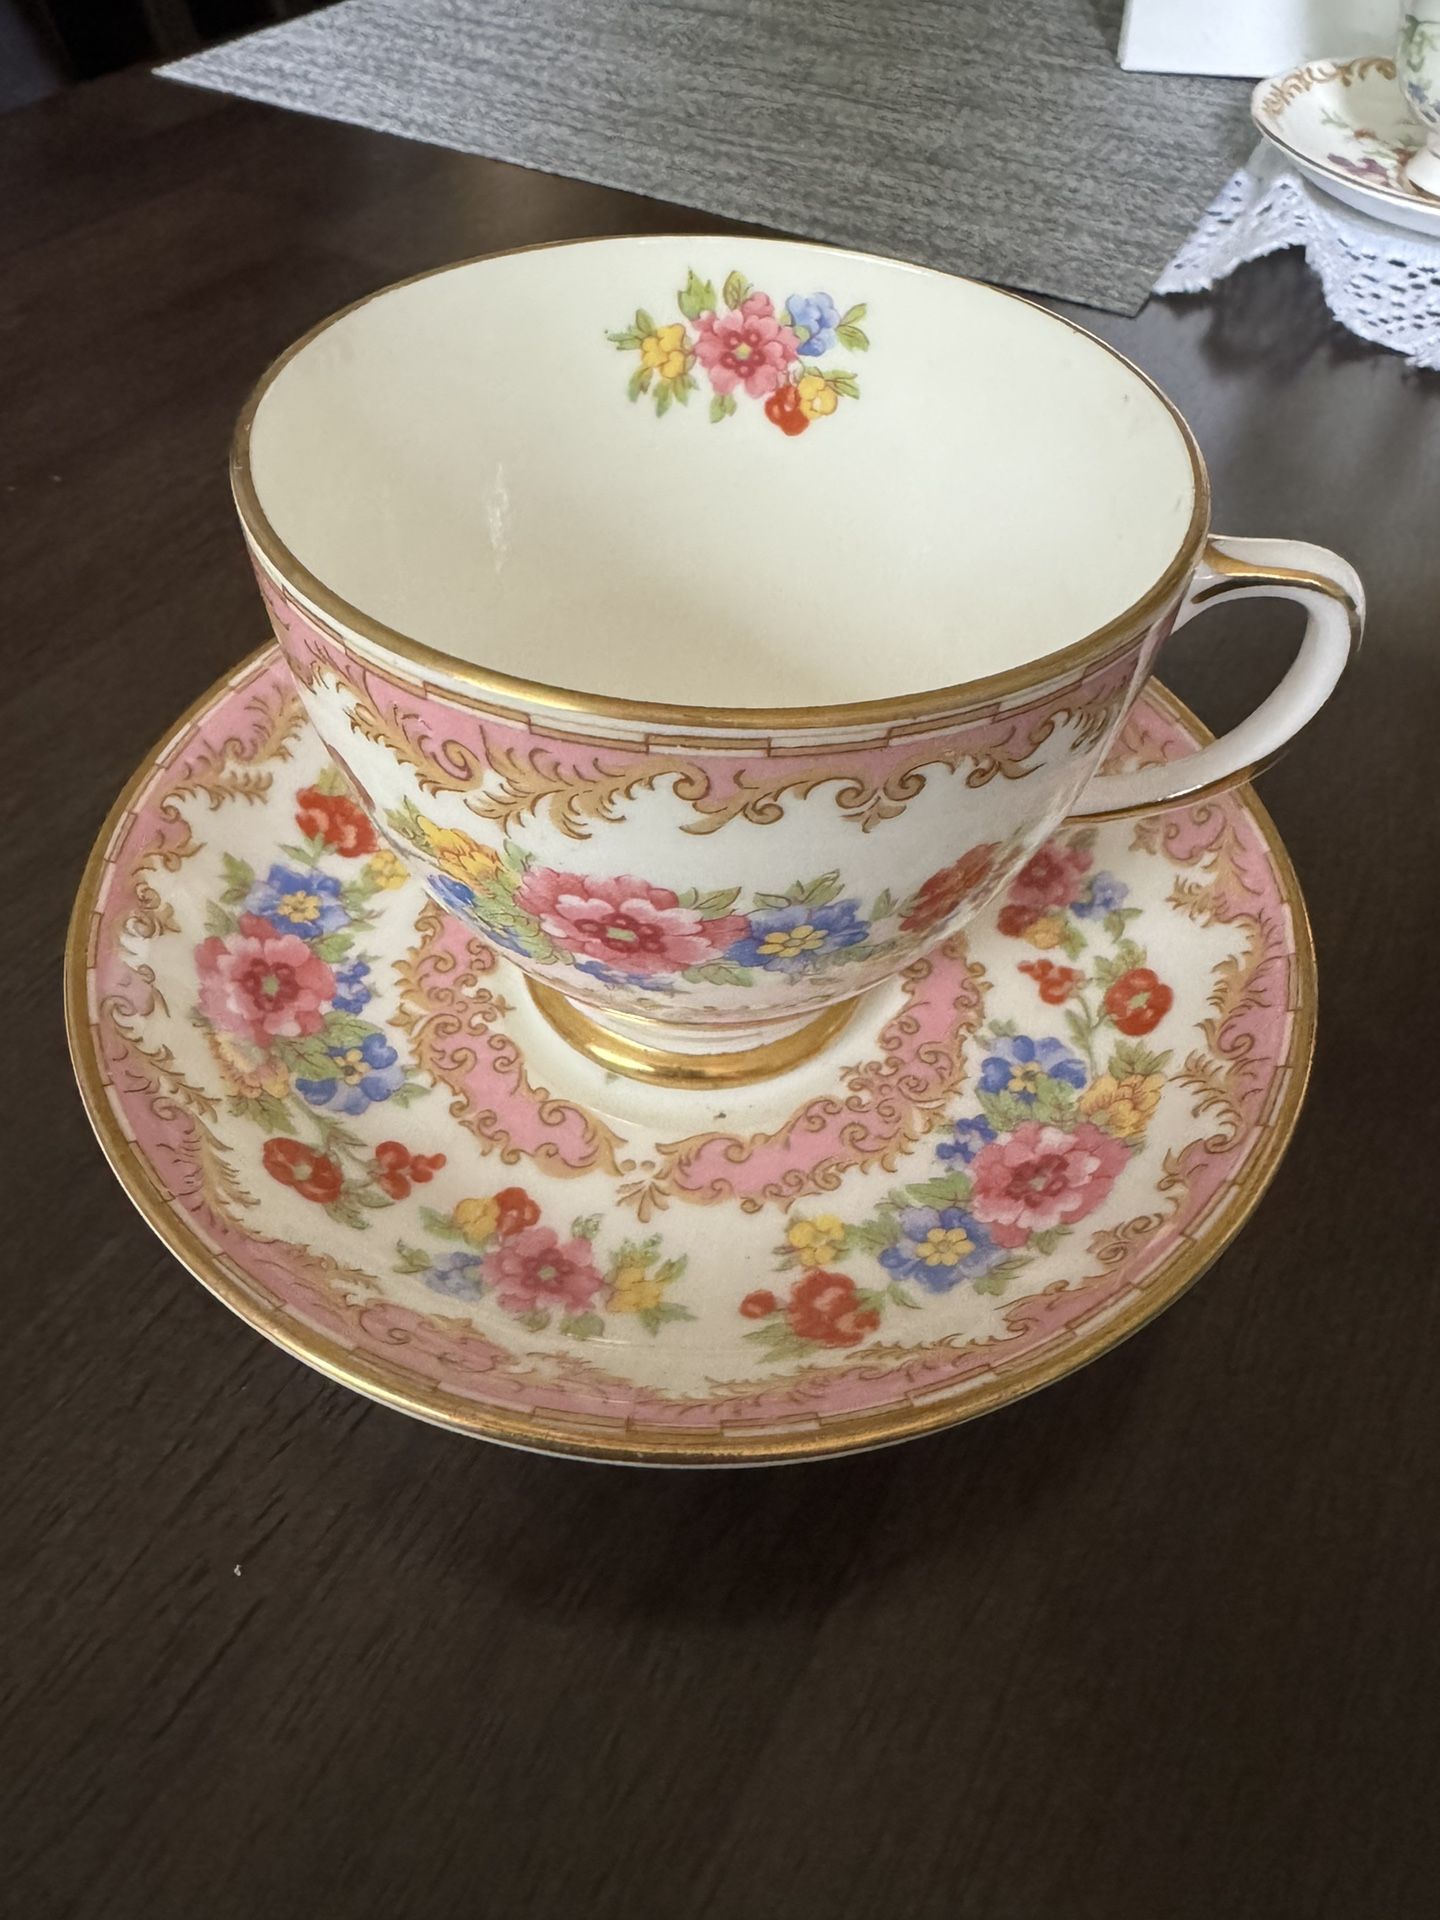 Old Royal China Tea Cup